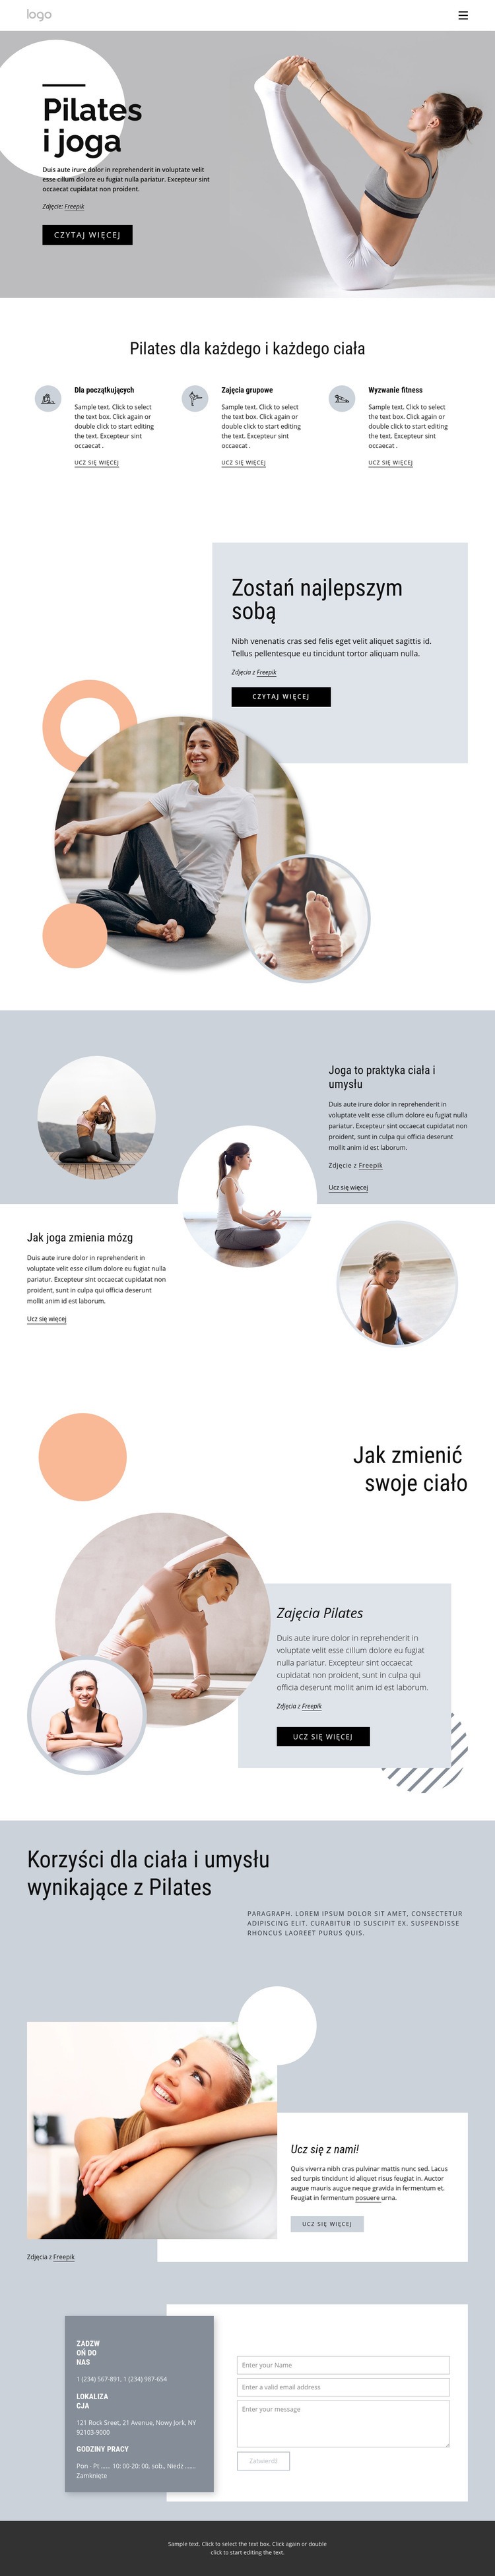 Pilates i centrum jogi Wstęp